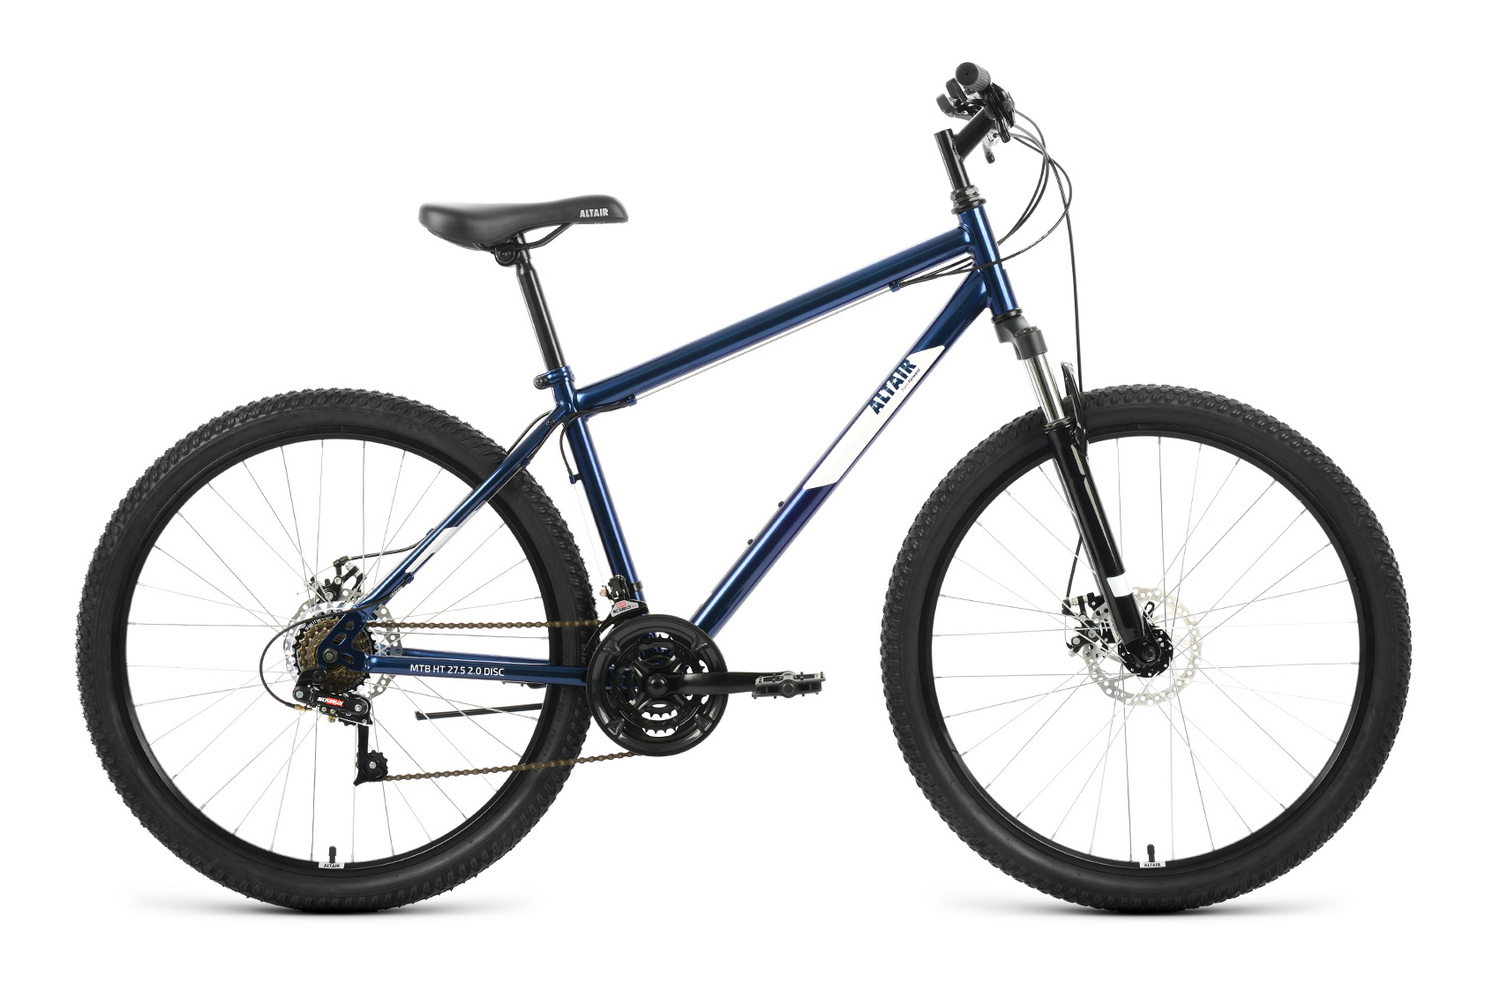 Горный велосипед Altair MTB HT 27.5 2.0 D, год 2022, цвет Синий-Белый, ростовка 17